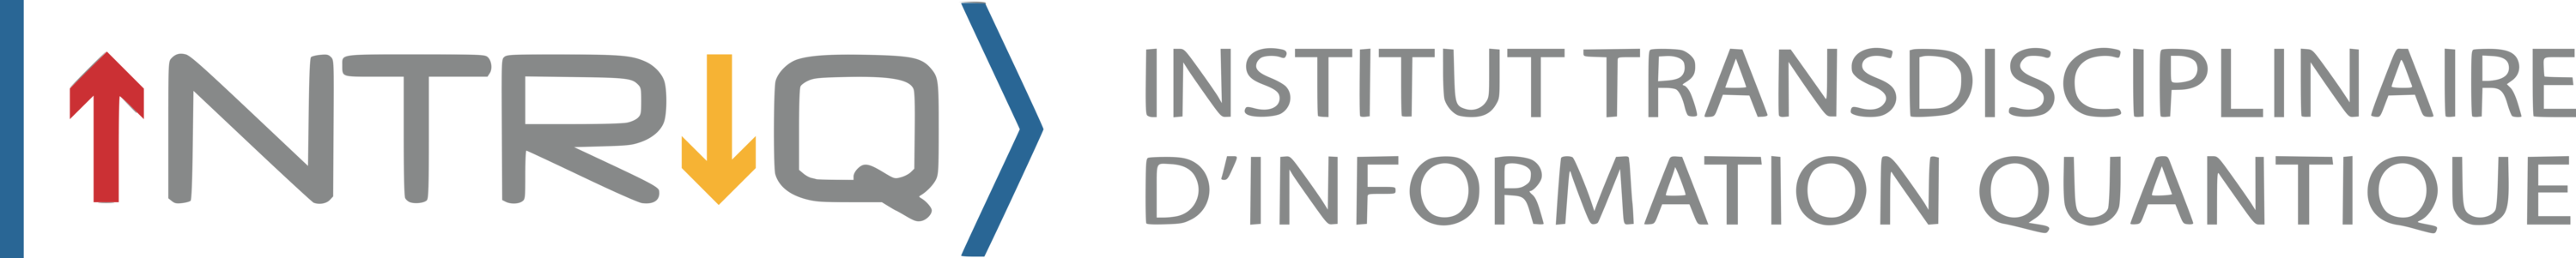 Institut Transdisciplinaire d'Information Quantique (INTRIQ)